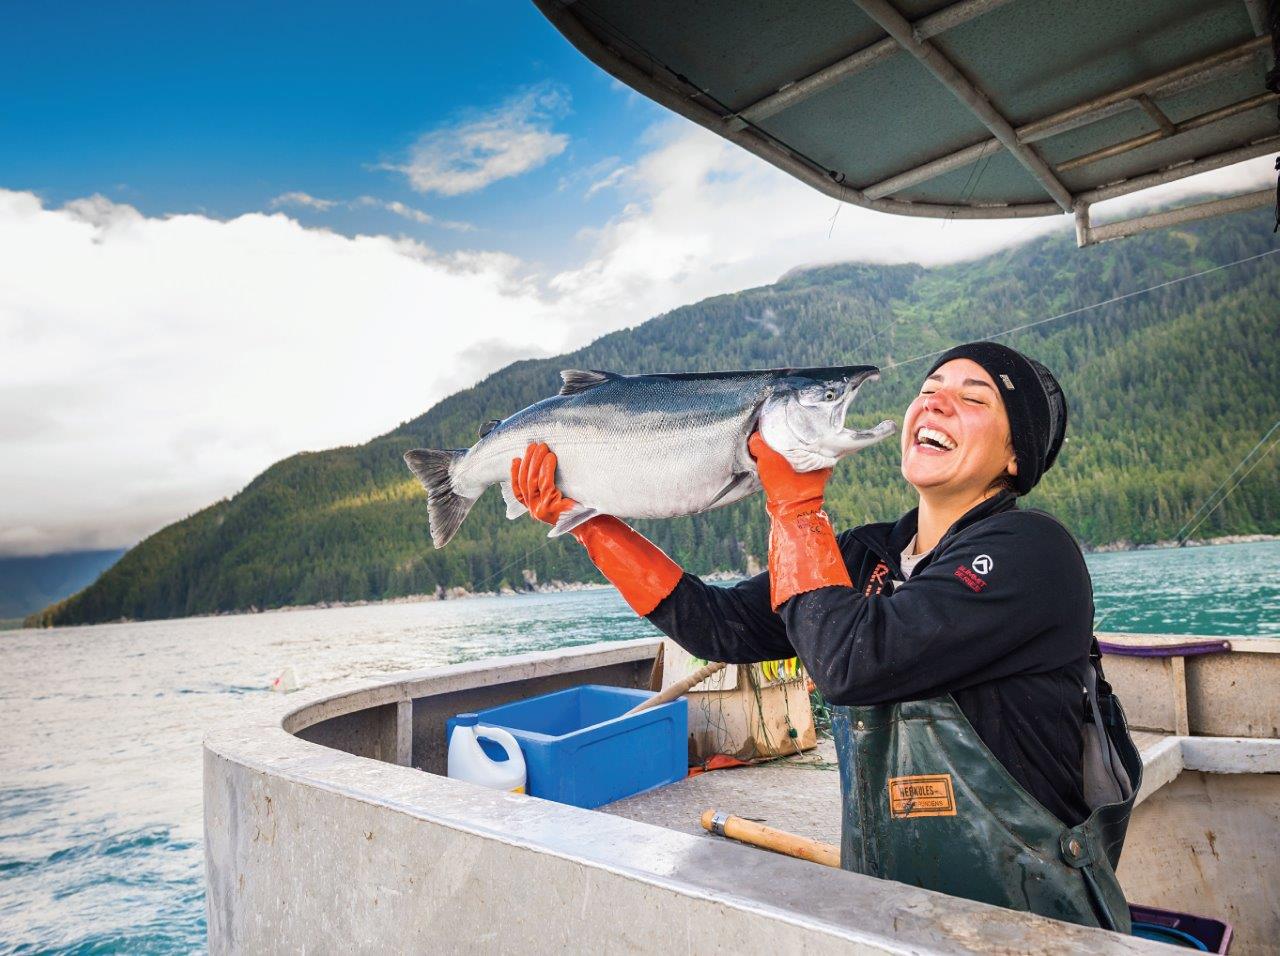 Aliaskos regionas išskirtinis ne tik dėl natūralios gamtos, bet ir dėl tvarios žvejybos, kuri leidžia išsaugoti unikalias natūralios gamtos išaugintas laukines regiono žuvis